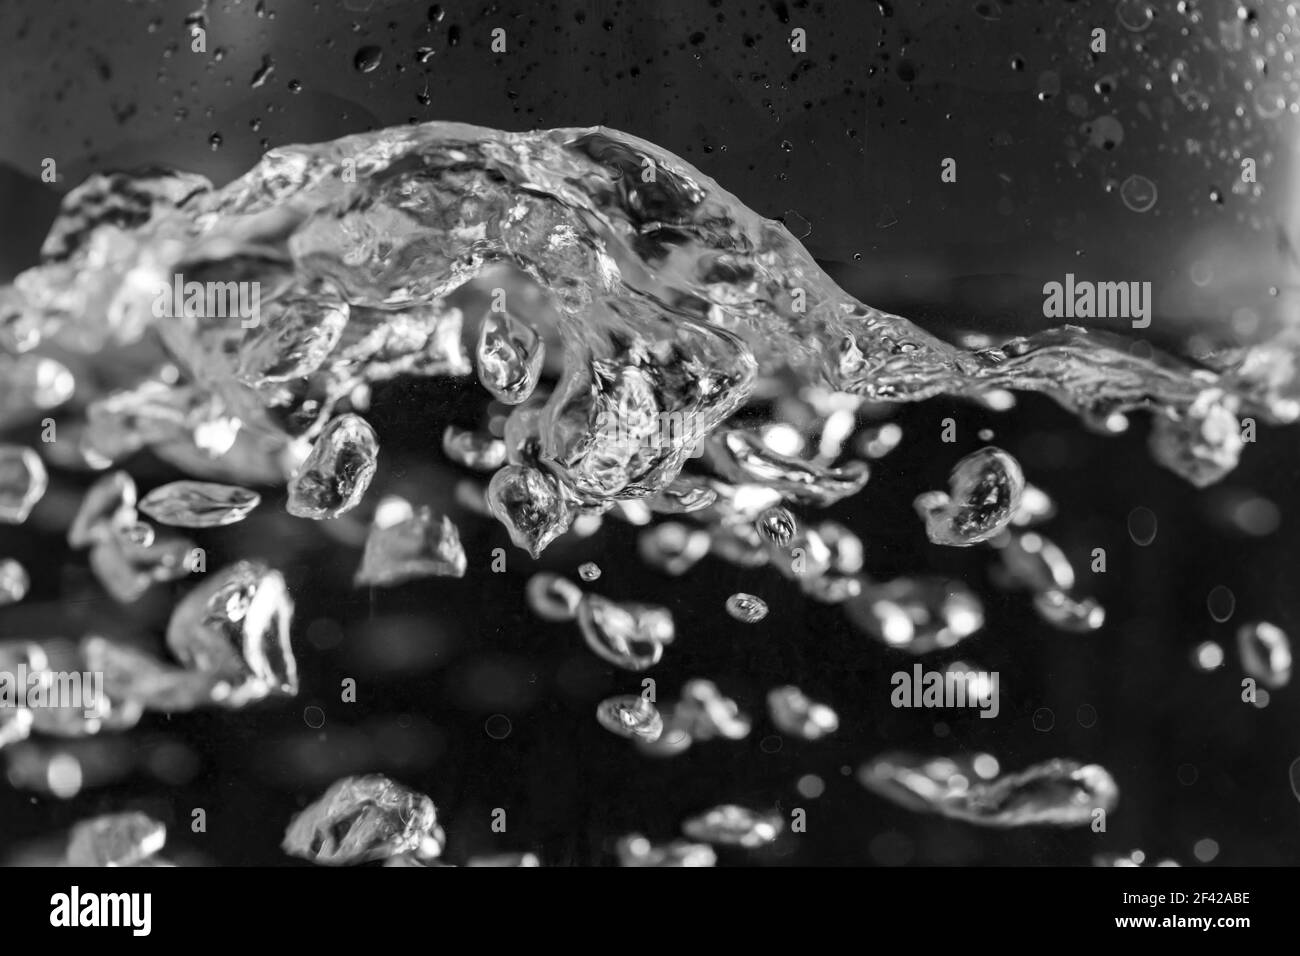 Une eau est bouillie dans une bouilloire électrique avec des murs transparents, gros plan. Banque D'Images